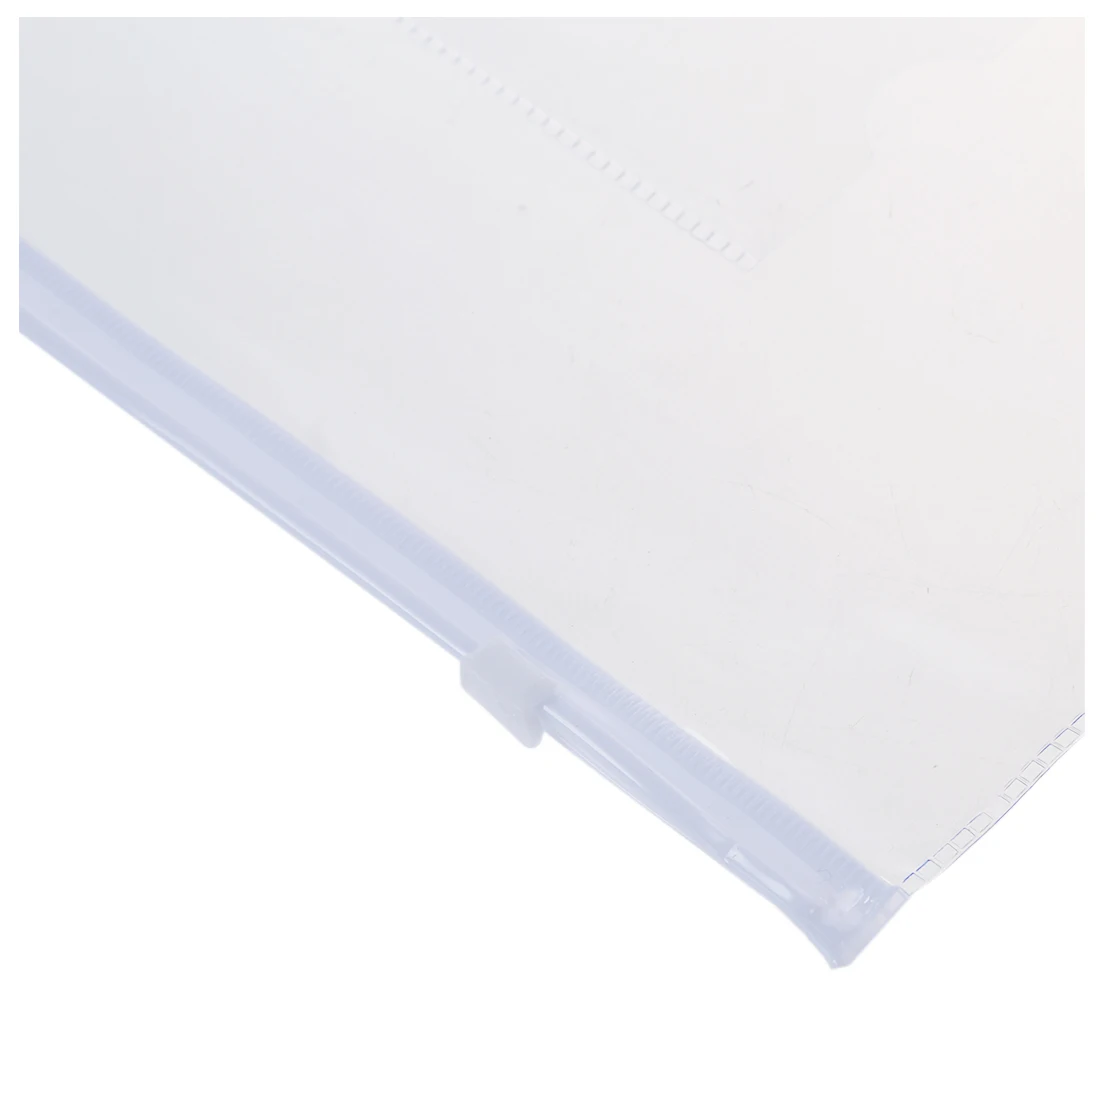 Белые Прозрачные Бумажные папки Формата А5 с застежкой-молнией, пакеты для файлов, 20 шт - 1